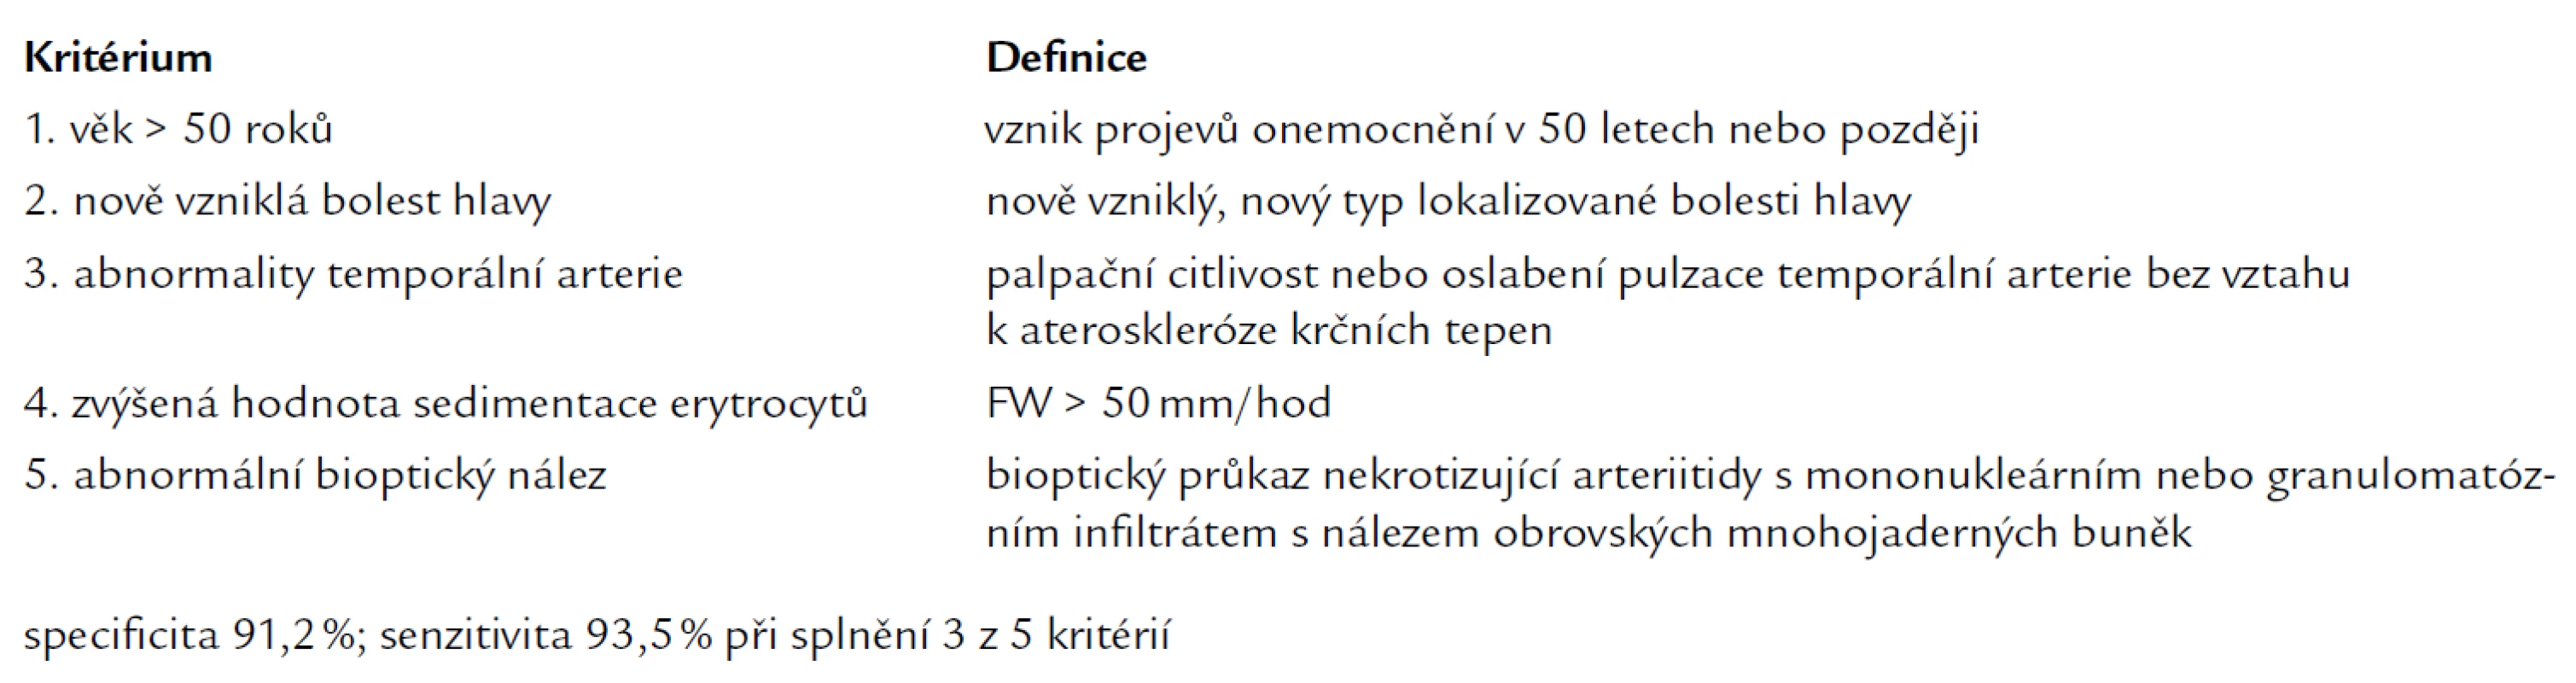 Diagnostická kritéria American College of Rheumatology pro obrovskobuněčnou arteriitidu [25].